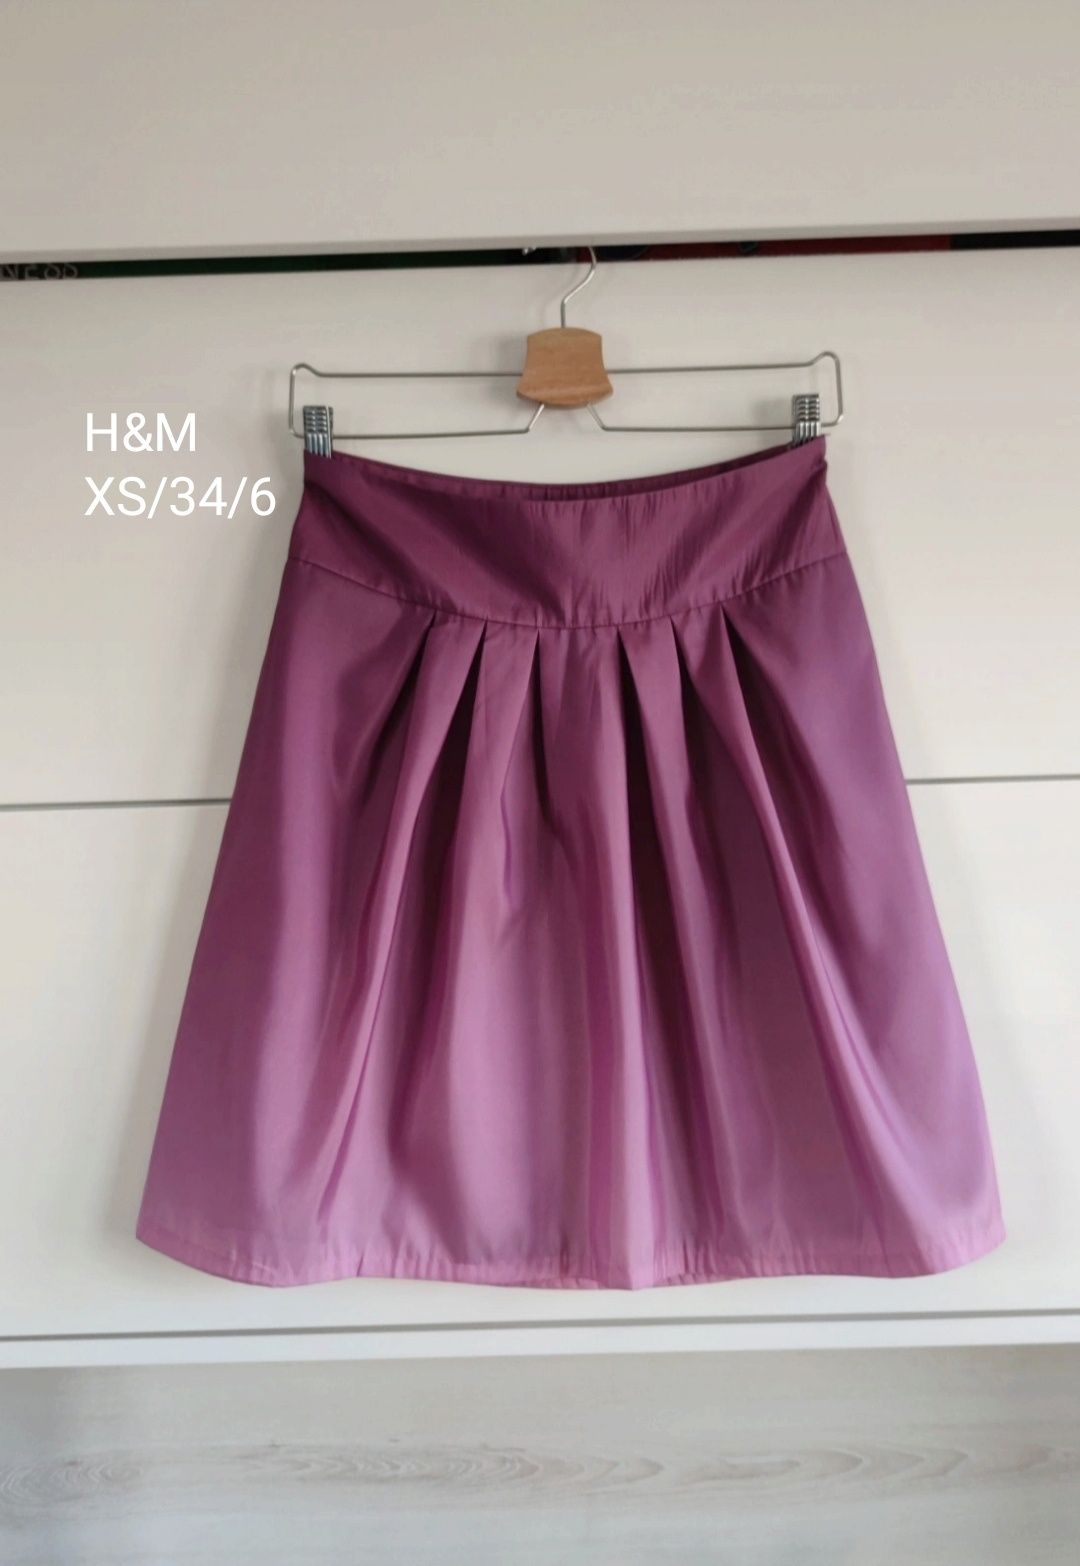 Nowa z metką spódnica skirt H&M liliowa wrzosowa XS/34/6